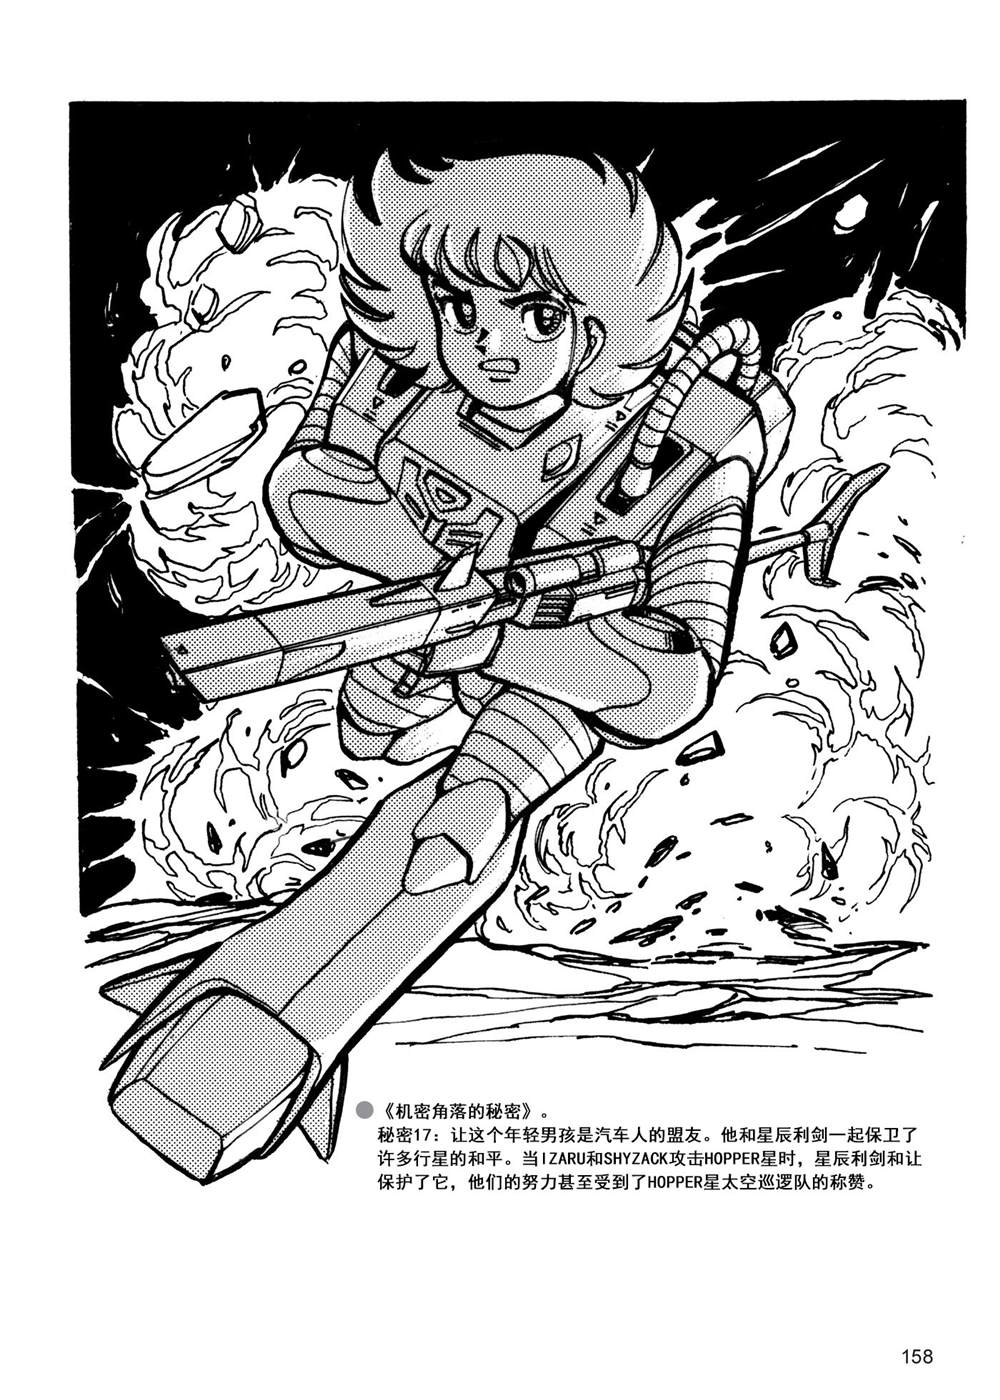 變形金剛日版G1雜誌插畫 - 戰鬥吧！超機械生命體變形金剛：勝利之鬥爭 - 1